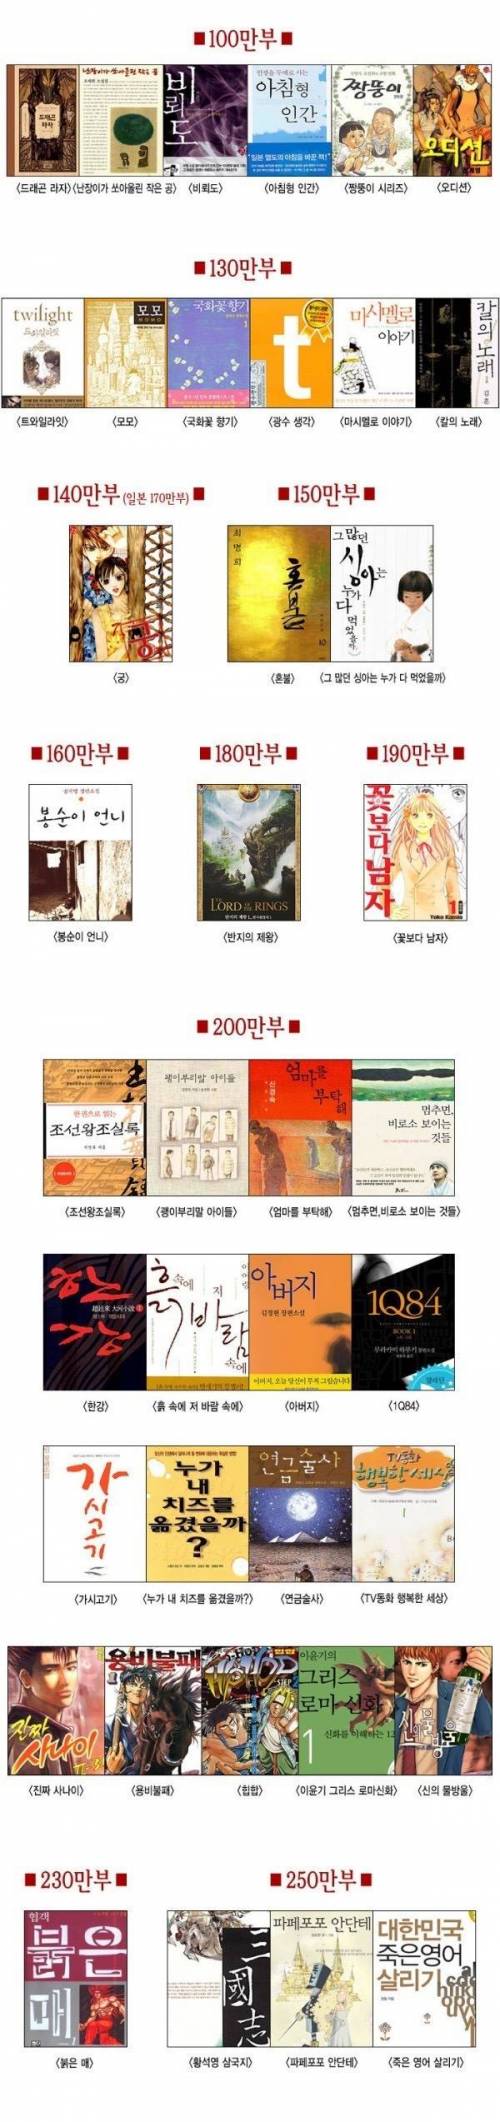 대한민국에서 가징 많이 팔린 책 랭킹.jpg